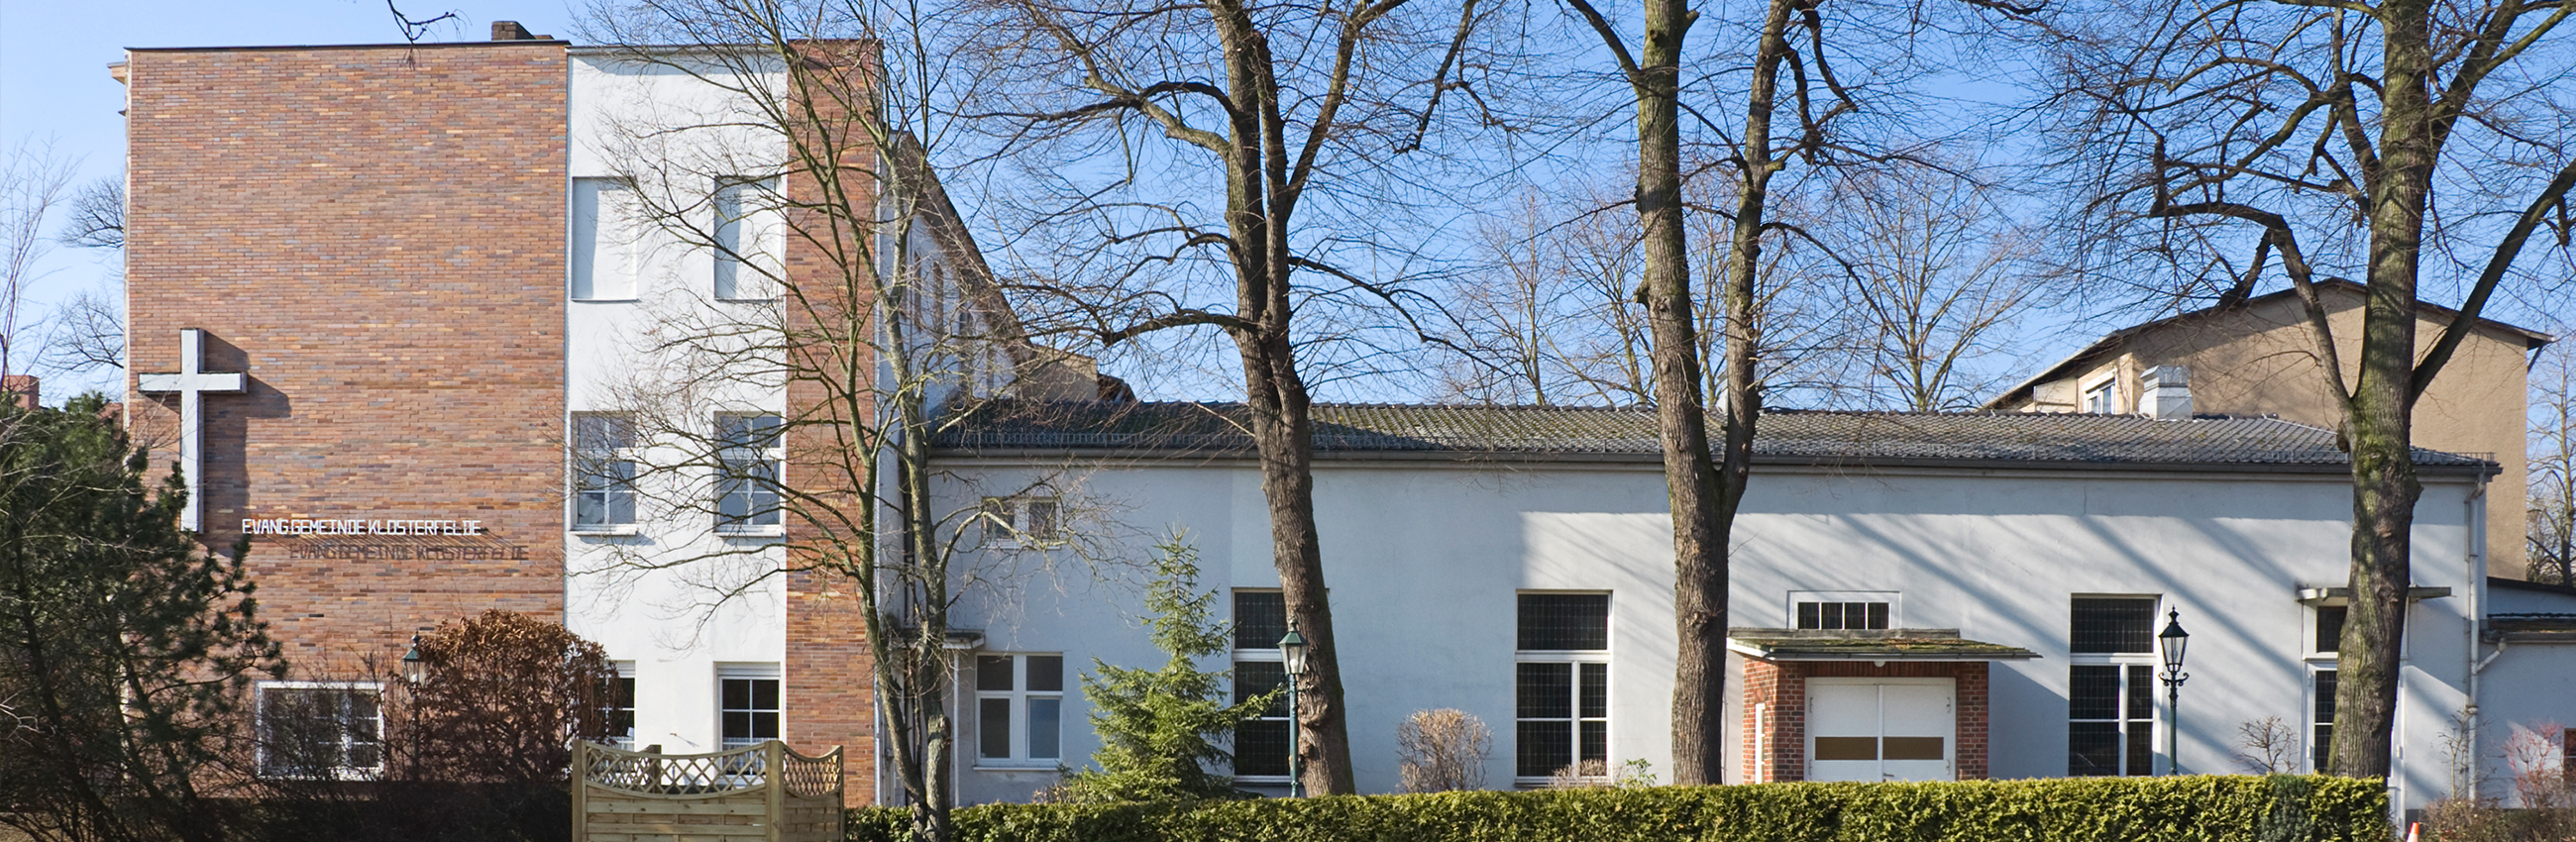 Seitenansicht Gemeinde Klosterfelde mit Seitenflügel